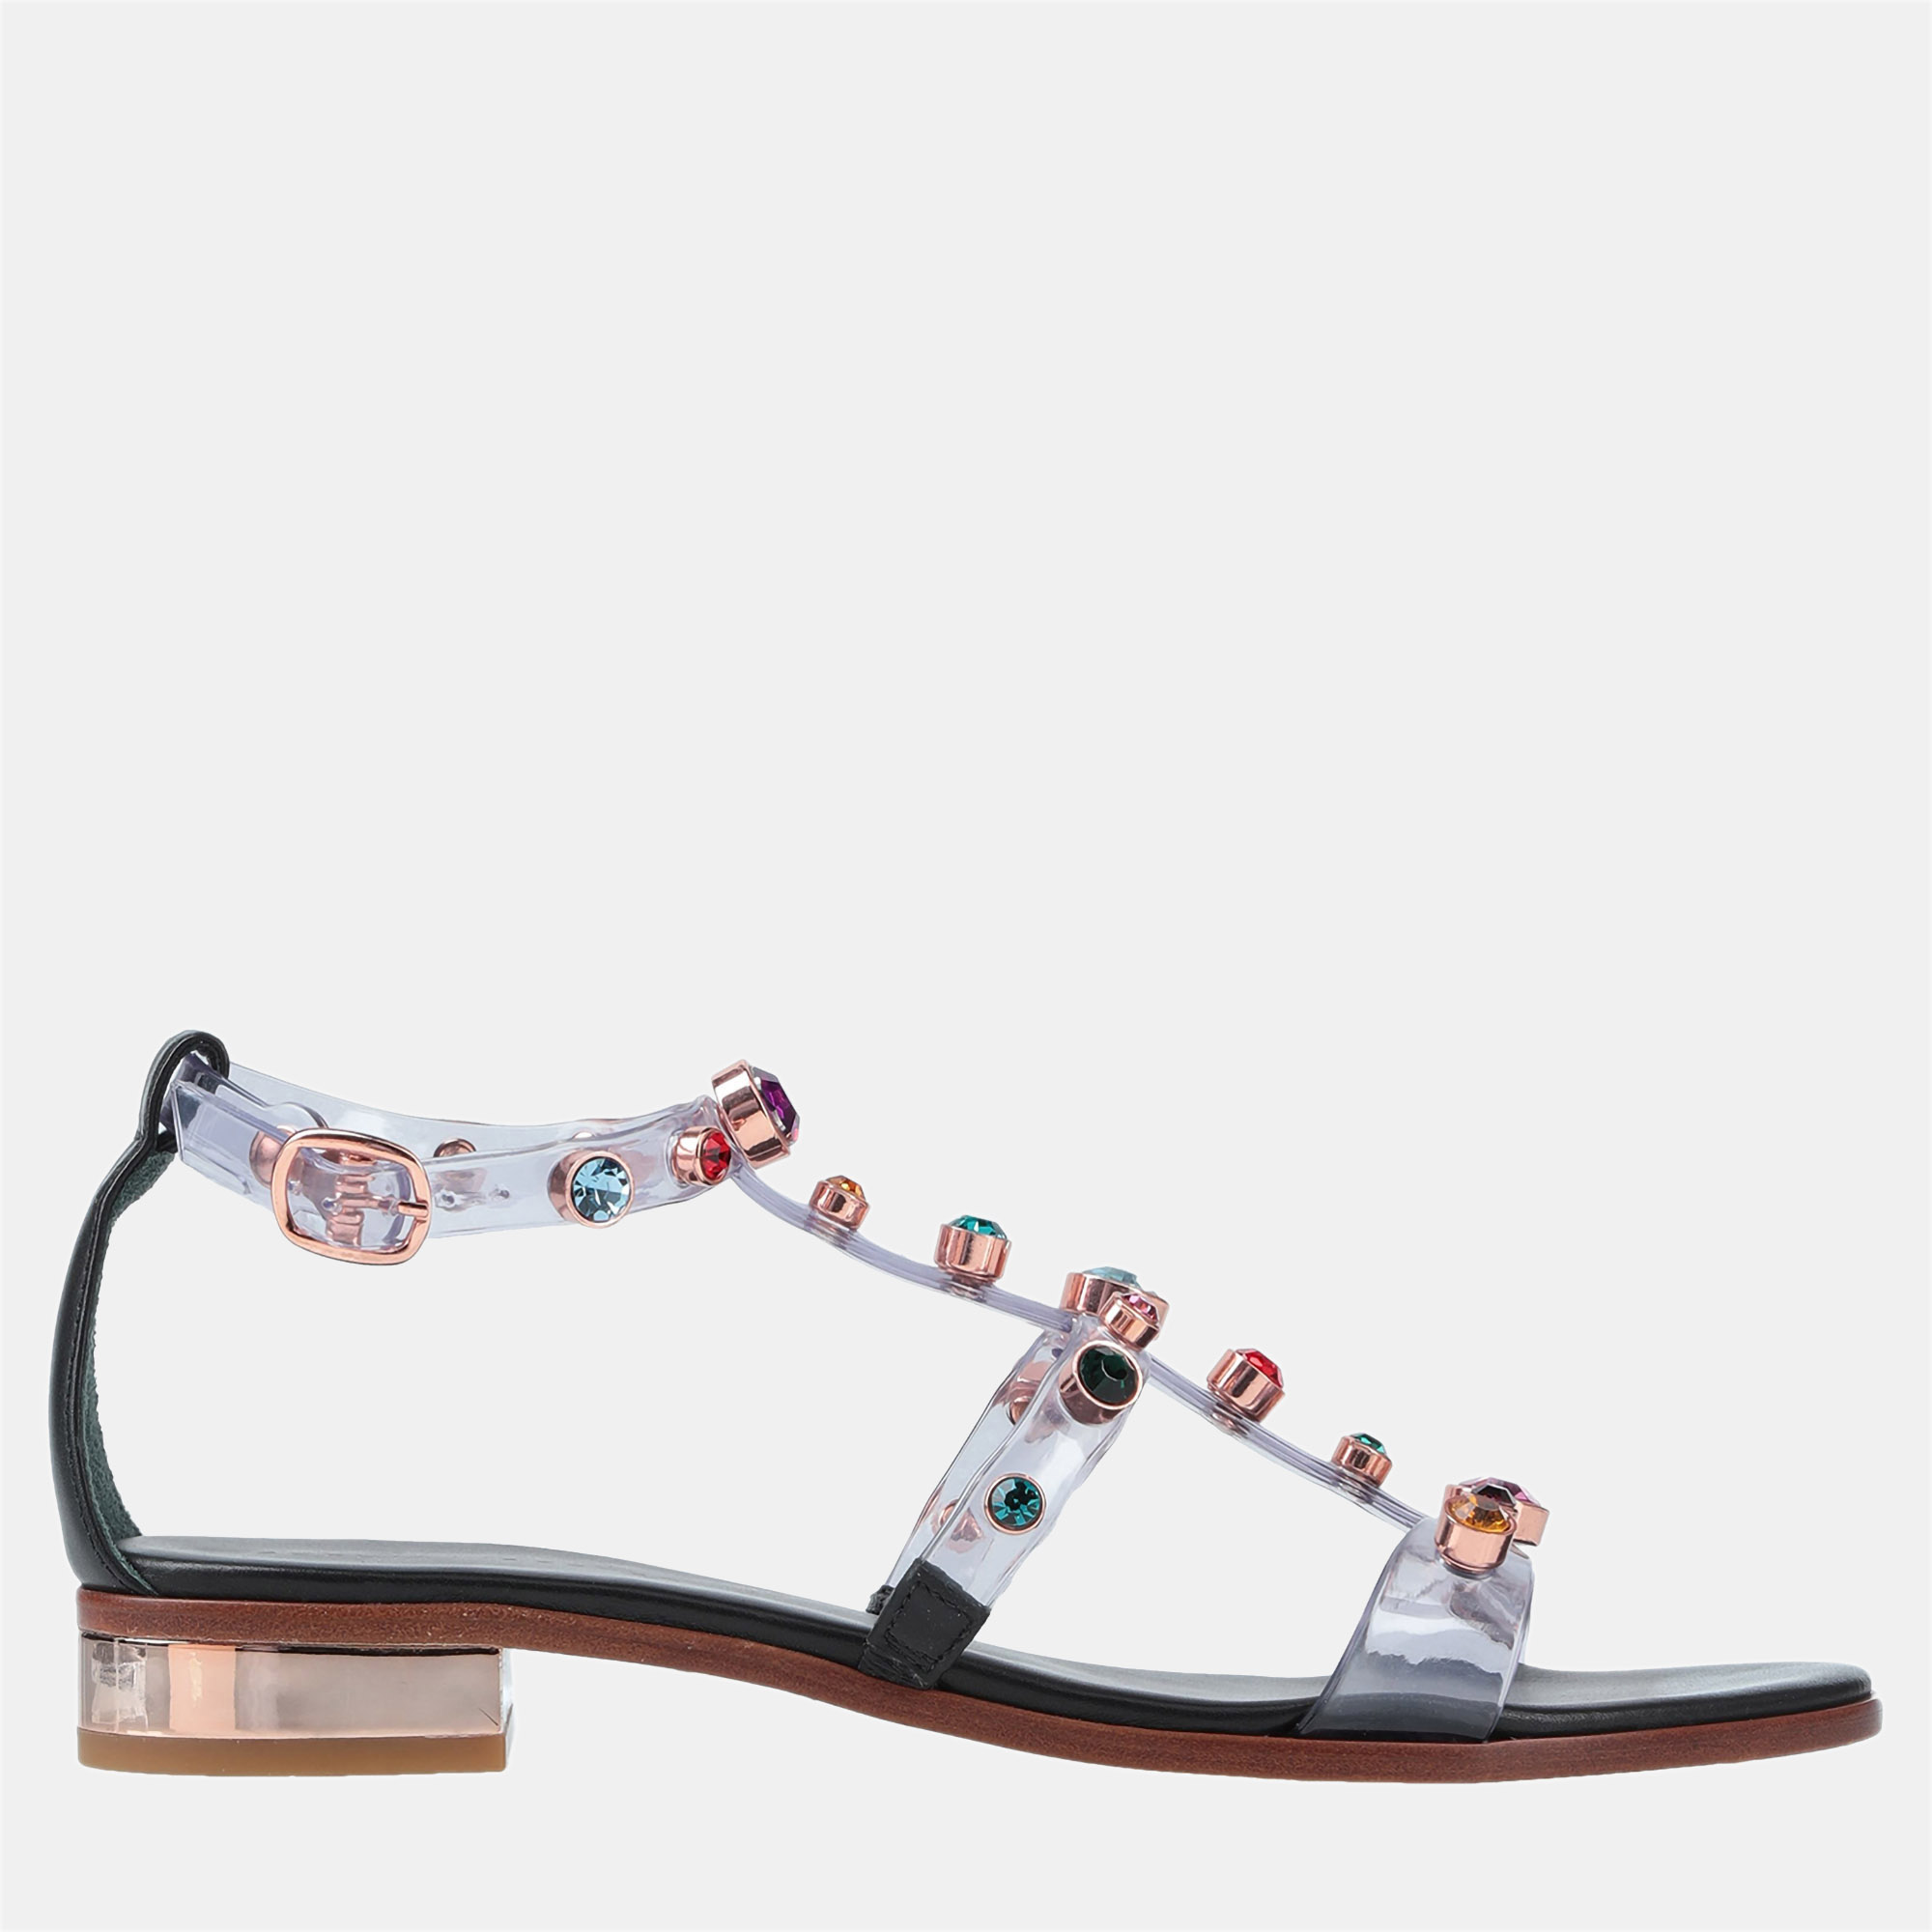 Sophia webster rubber and leather embellished sandals 40.5